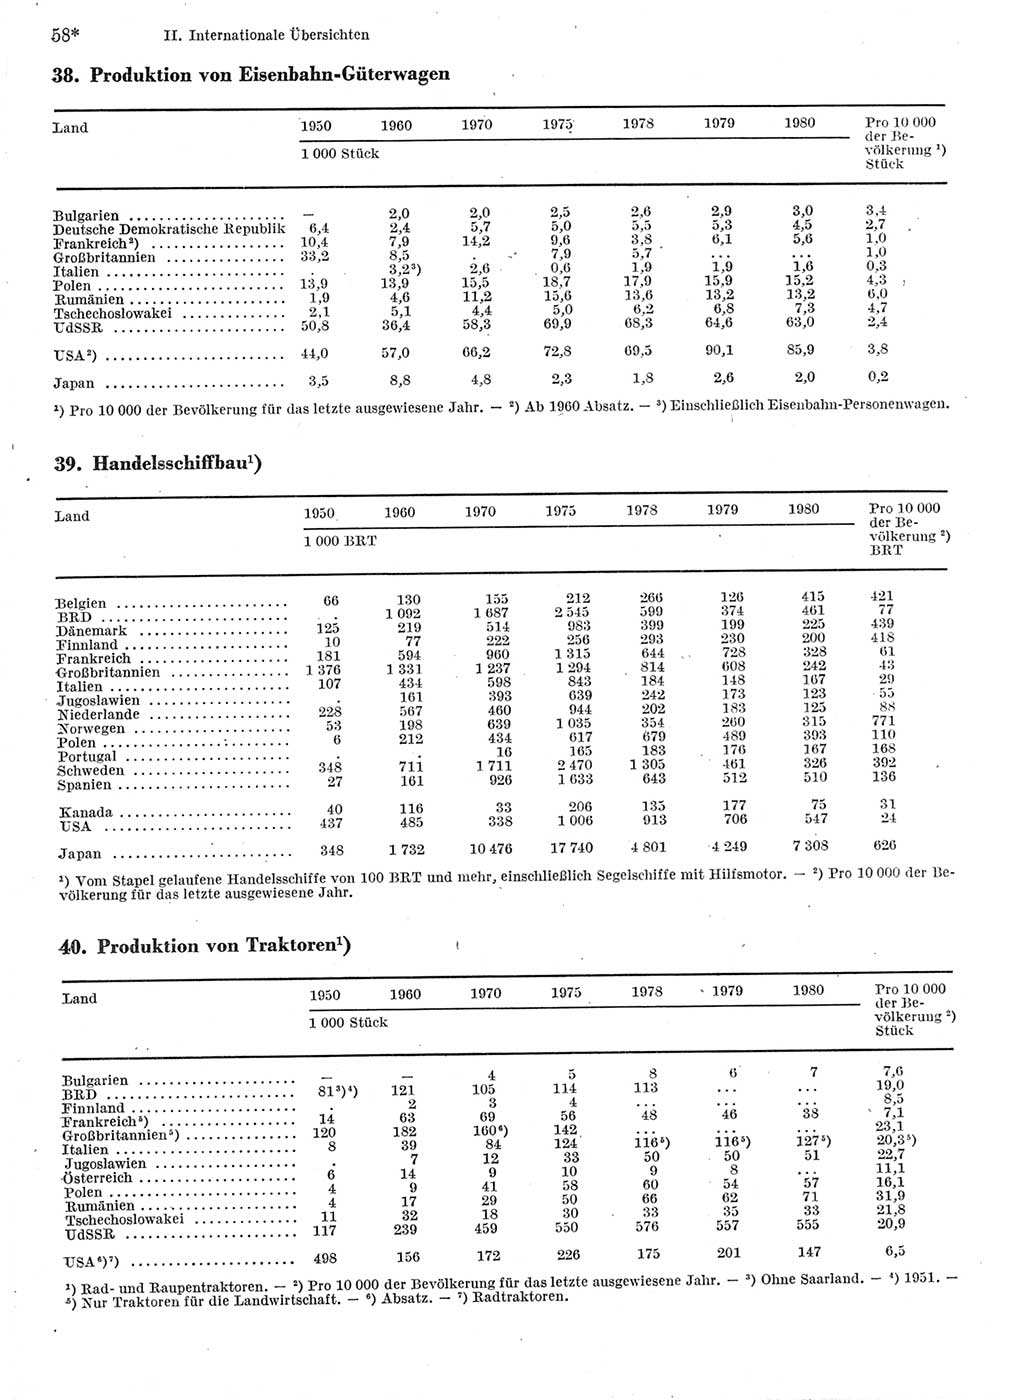 Statistisches Jahrbuch der Deutschen Demokratischen Republik (DDR) 1982, Seite 58 (Stat. Jb. DDR 1982, S. 58)